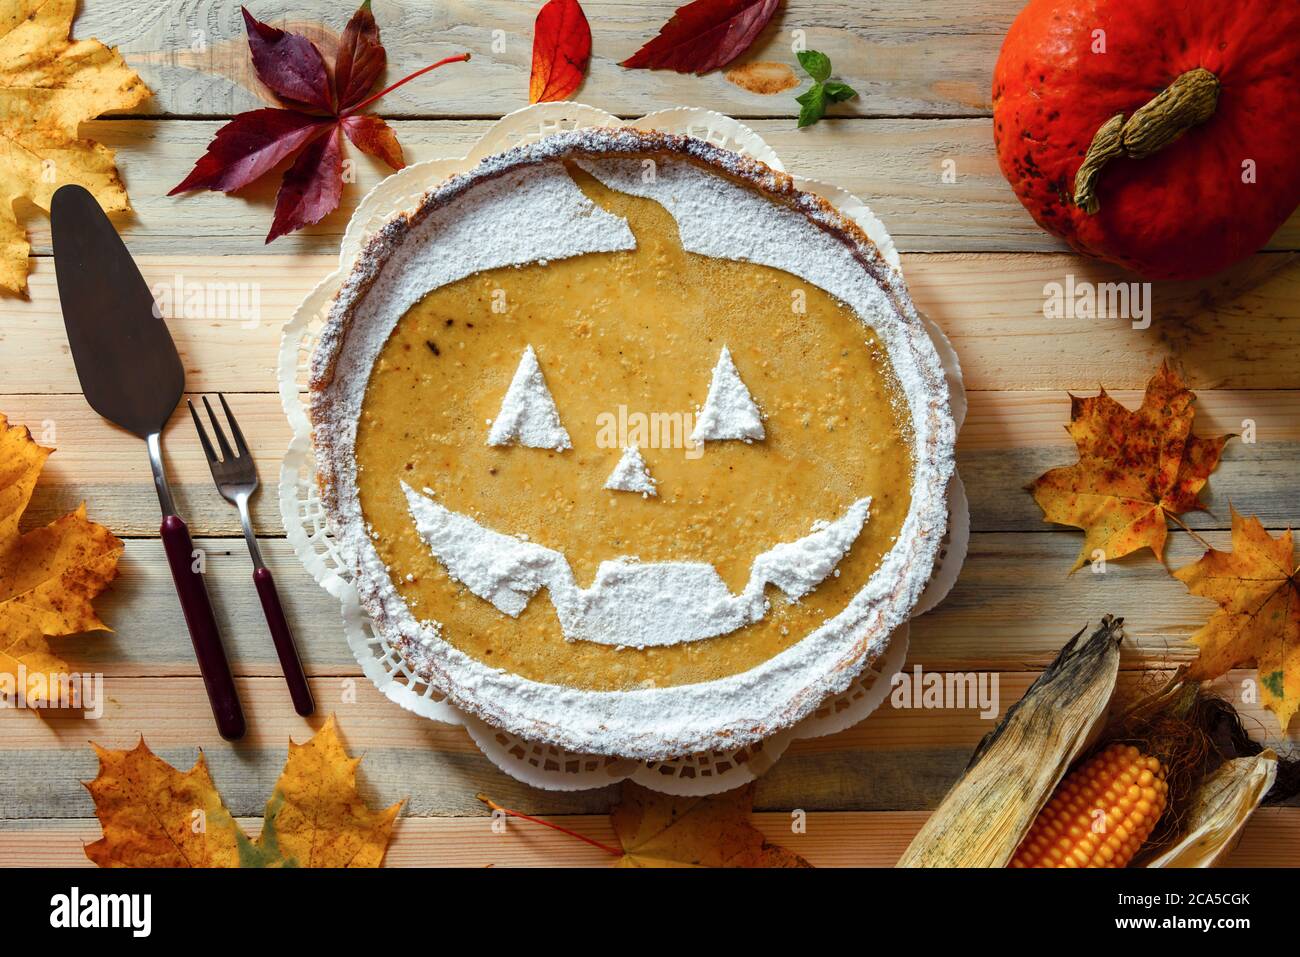 Deliziosa torta di Halloween di zucca fatta in casa con foglie di cenere e mais intorno. Dolce torta con zucchero in polvere vista dall'alto. Fotografia alimentare Foto Stock